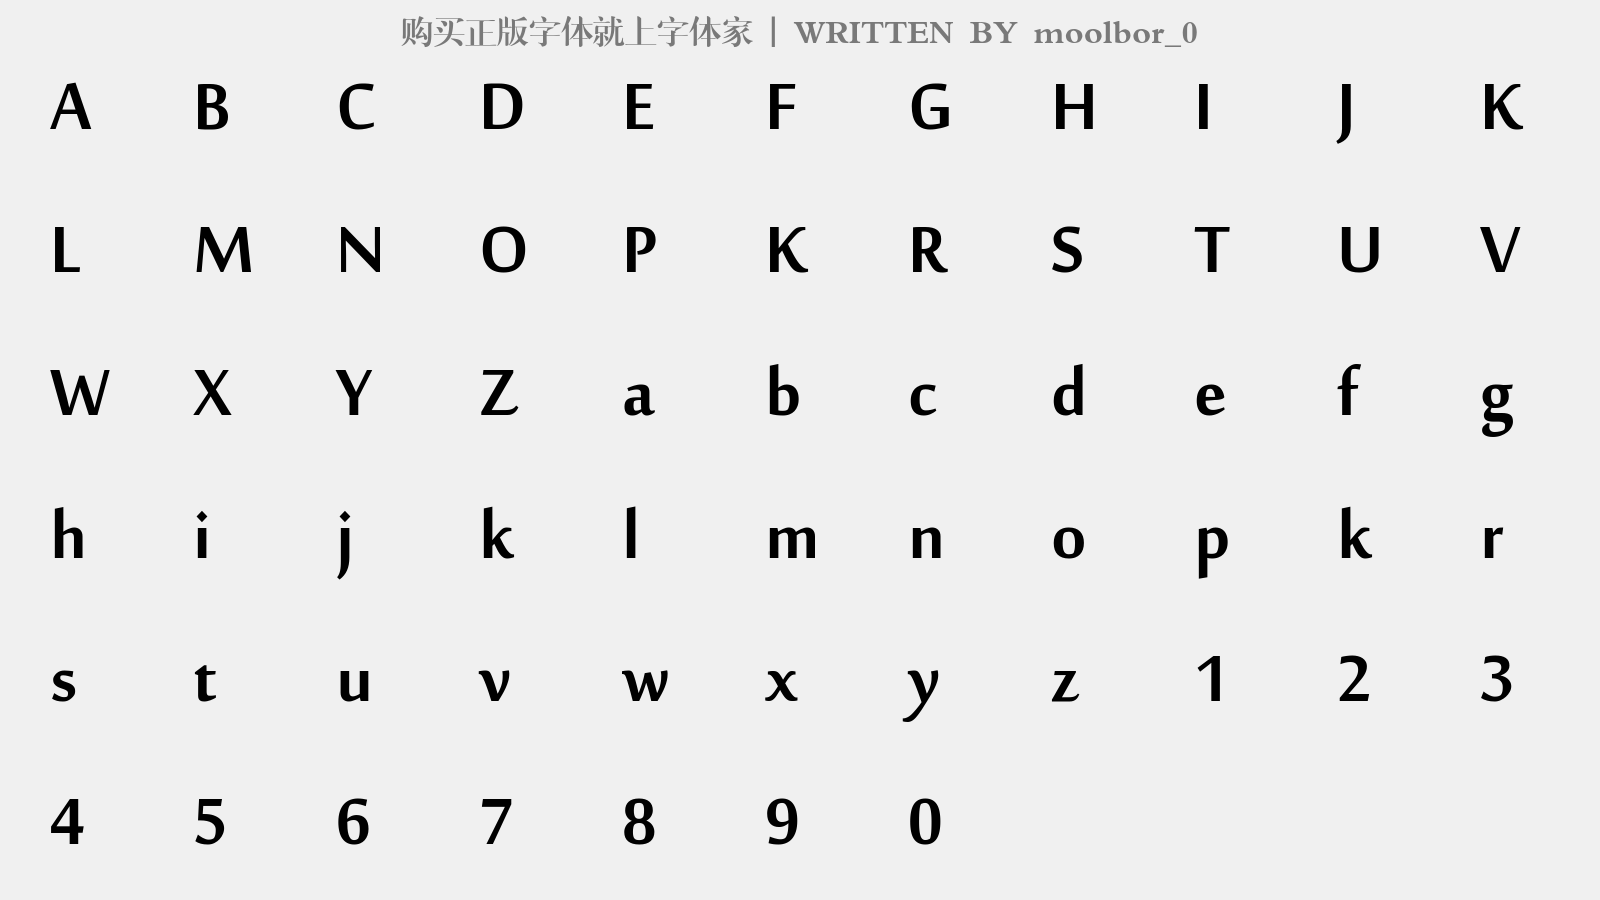 moolbor_0 - 大写字母/小写字母/数字